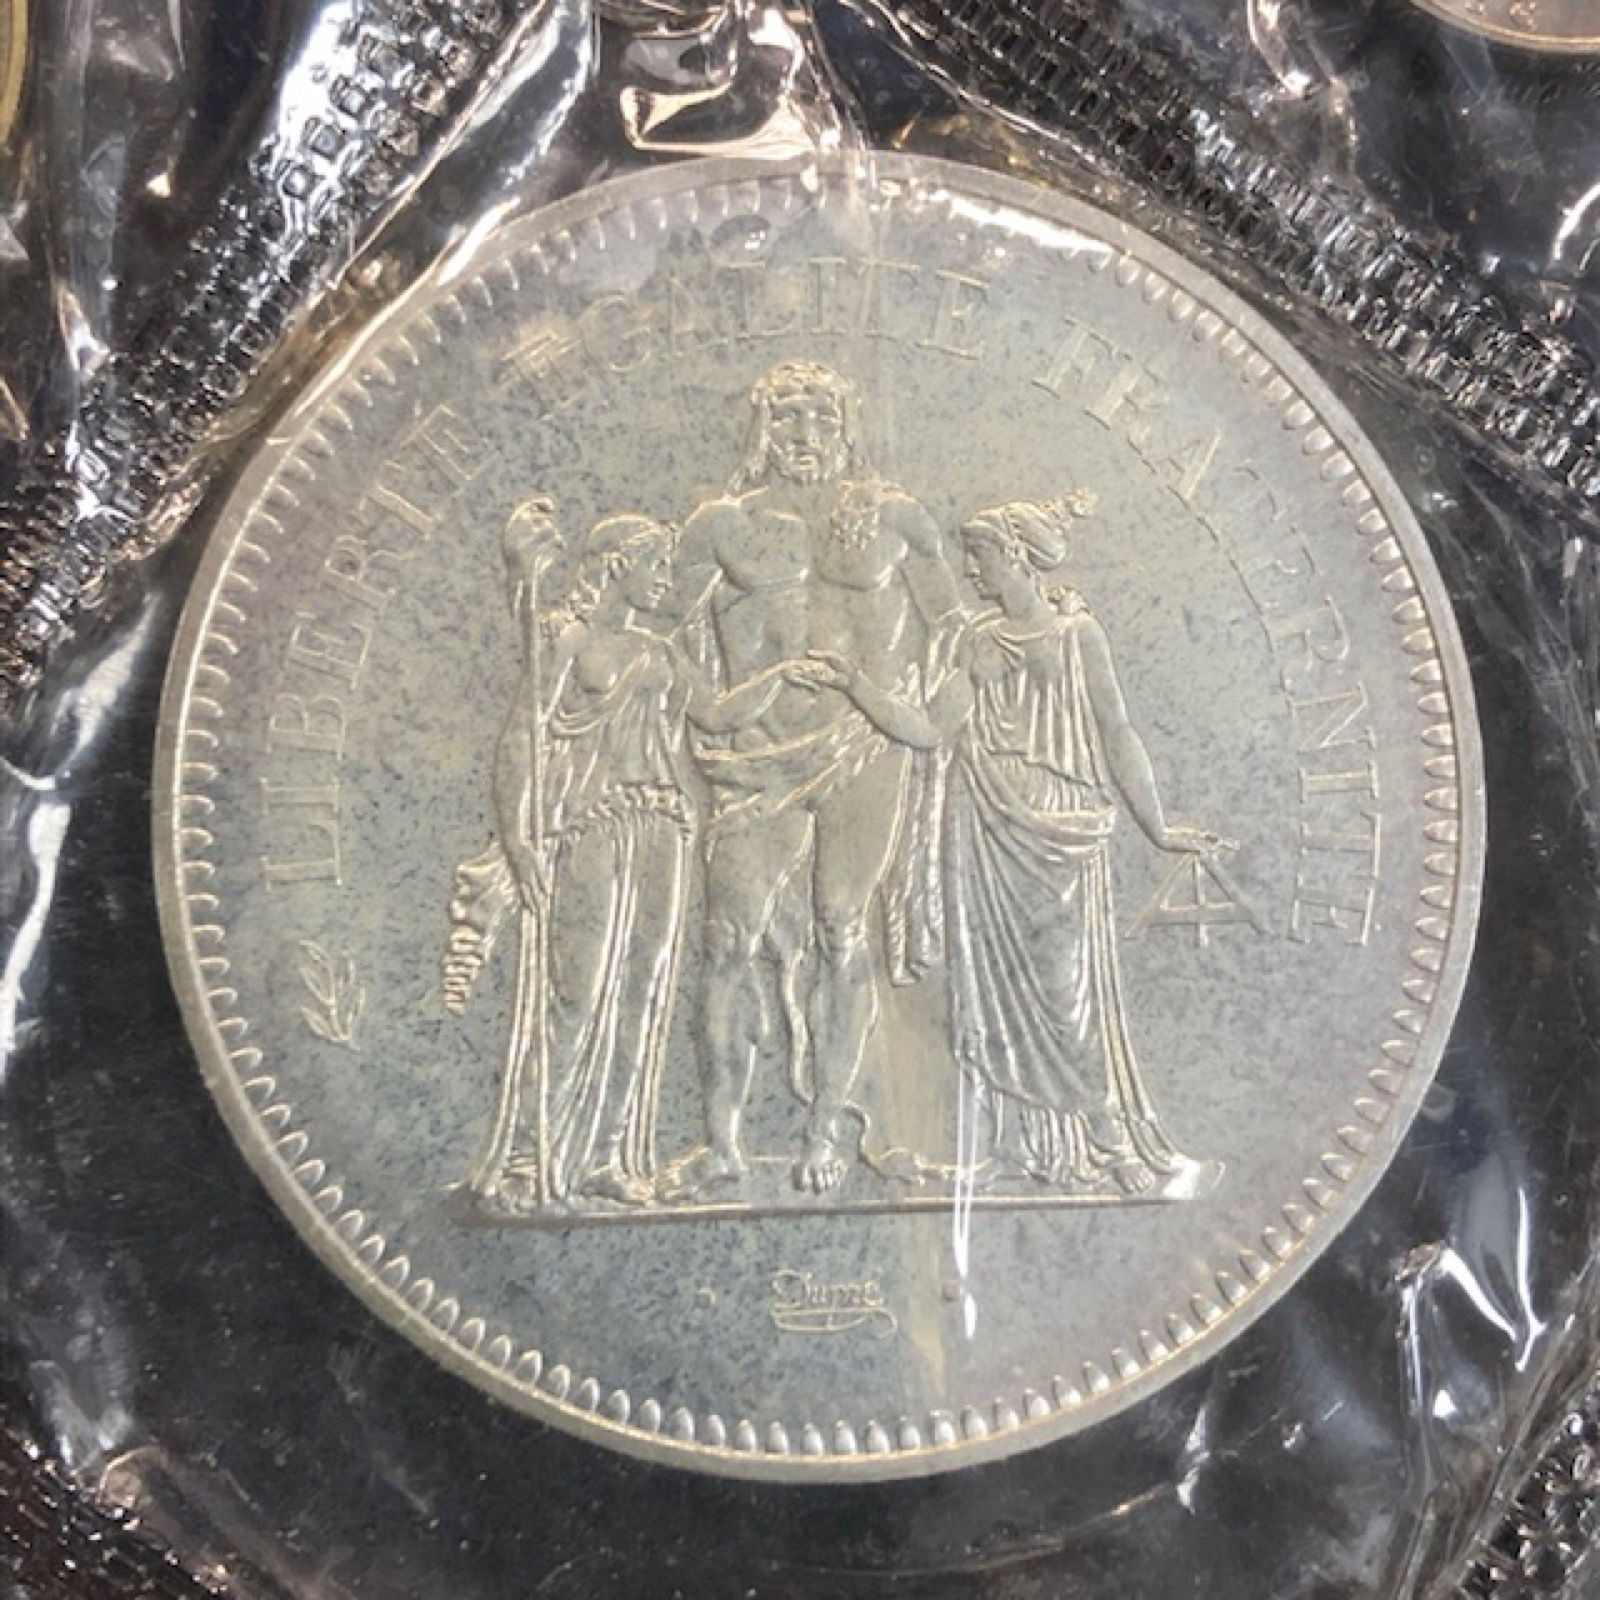 Coffret Monnaie de Paris Fleurs de Coins 1974